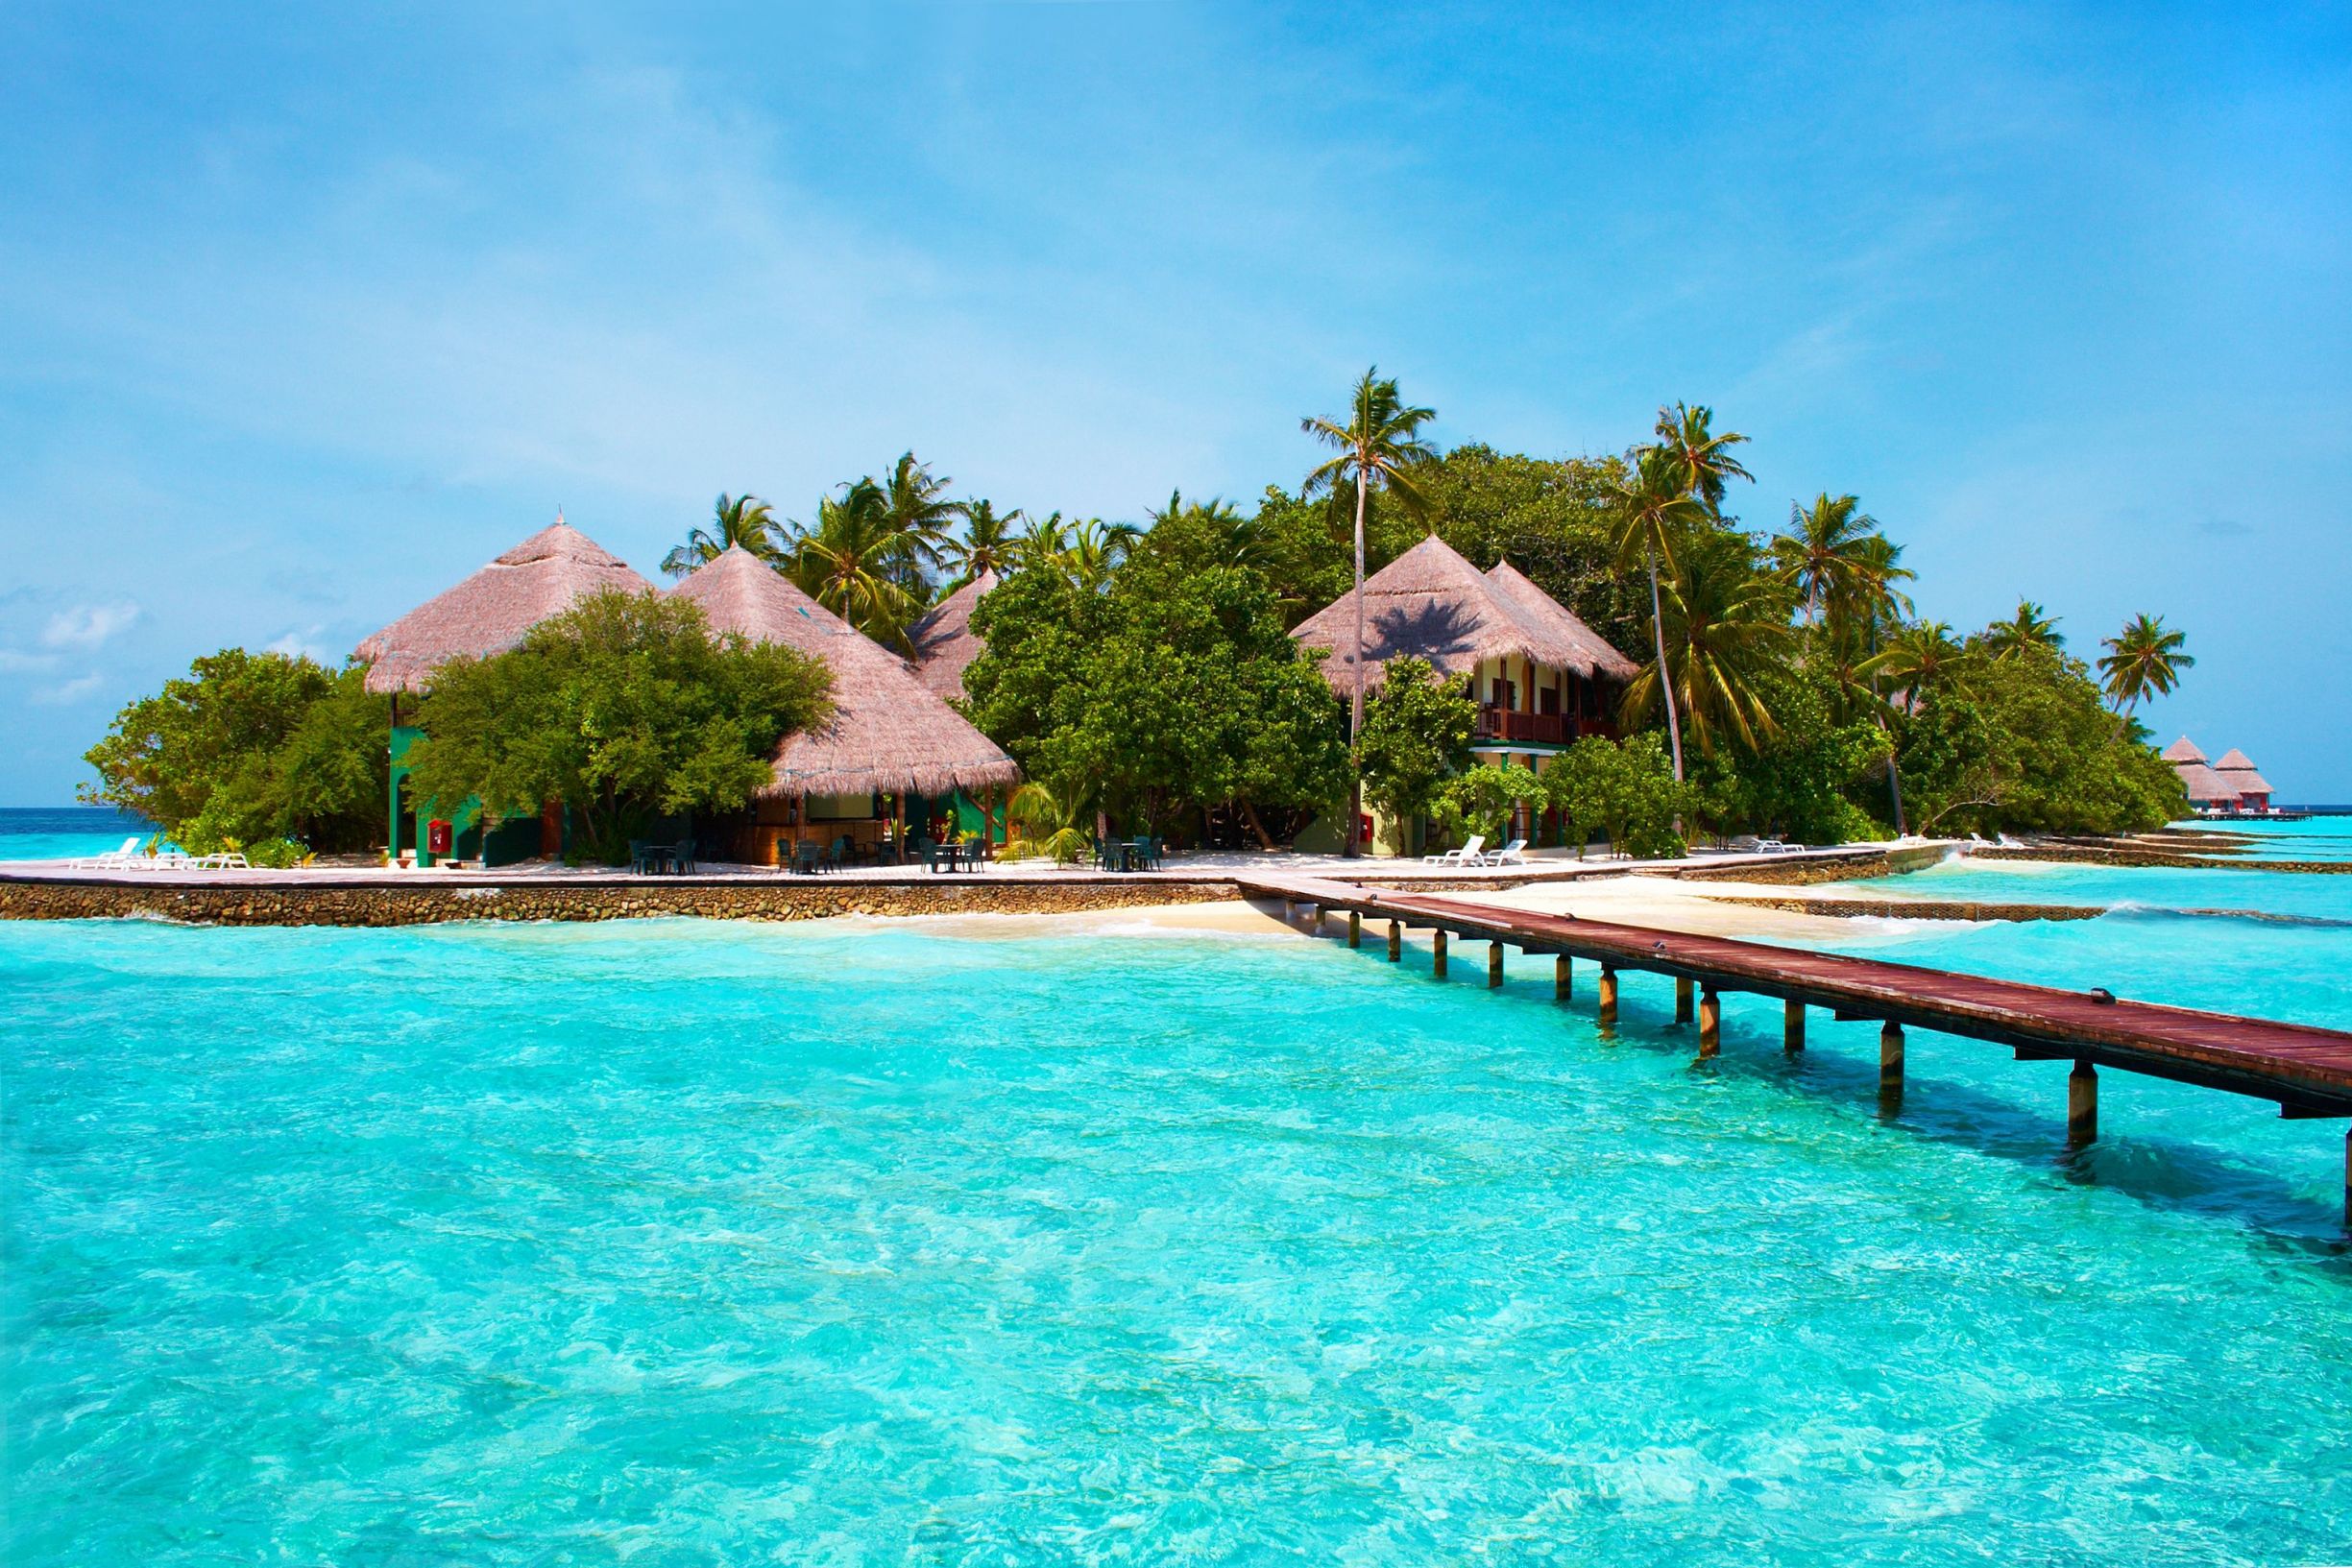 Beach huts in the Maldives